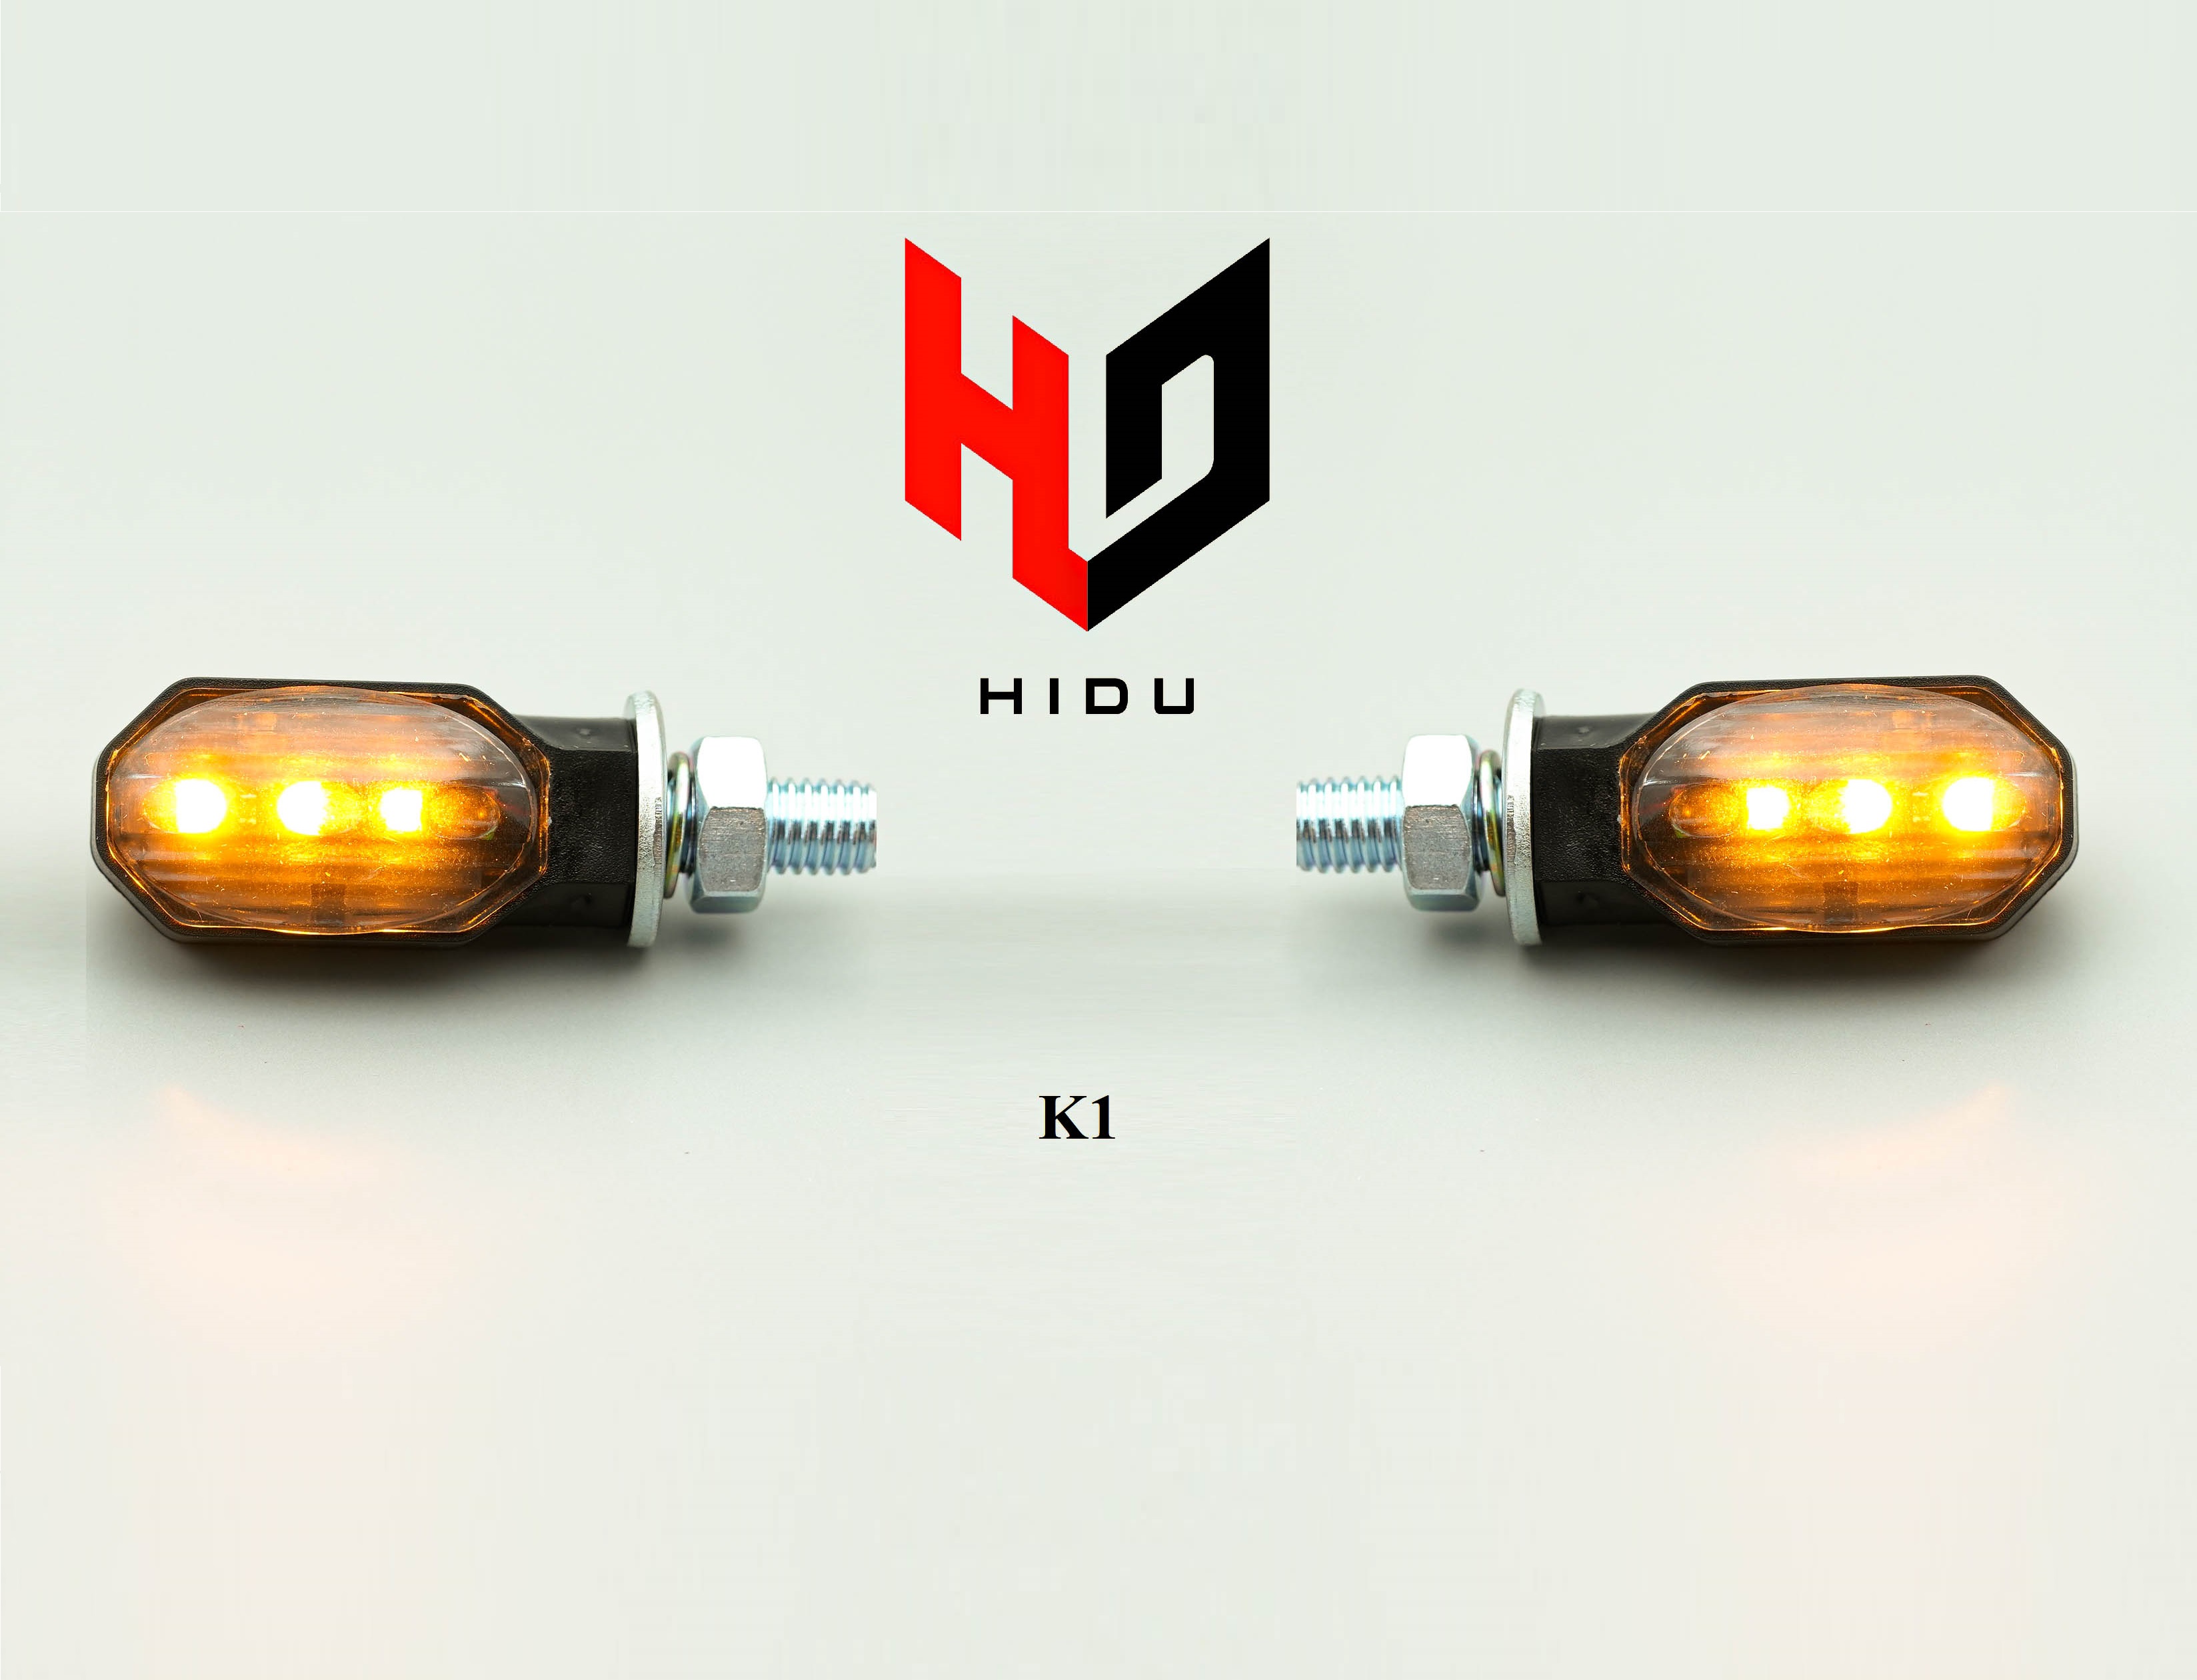 Đèn xi nhan K1 HIDU CHÍNH HÃNG kiểu mini cho các dòng xe winner X, exciter 150, NVX, MSX, CBR,MT-seri, PKl, PKN.